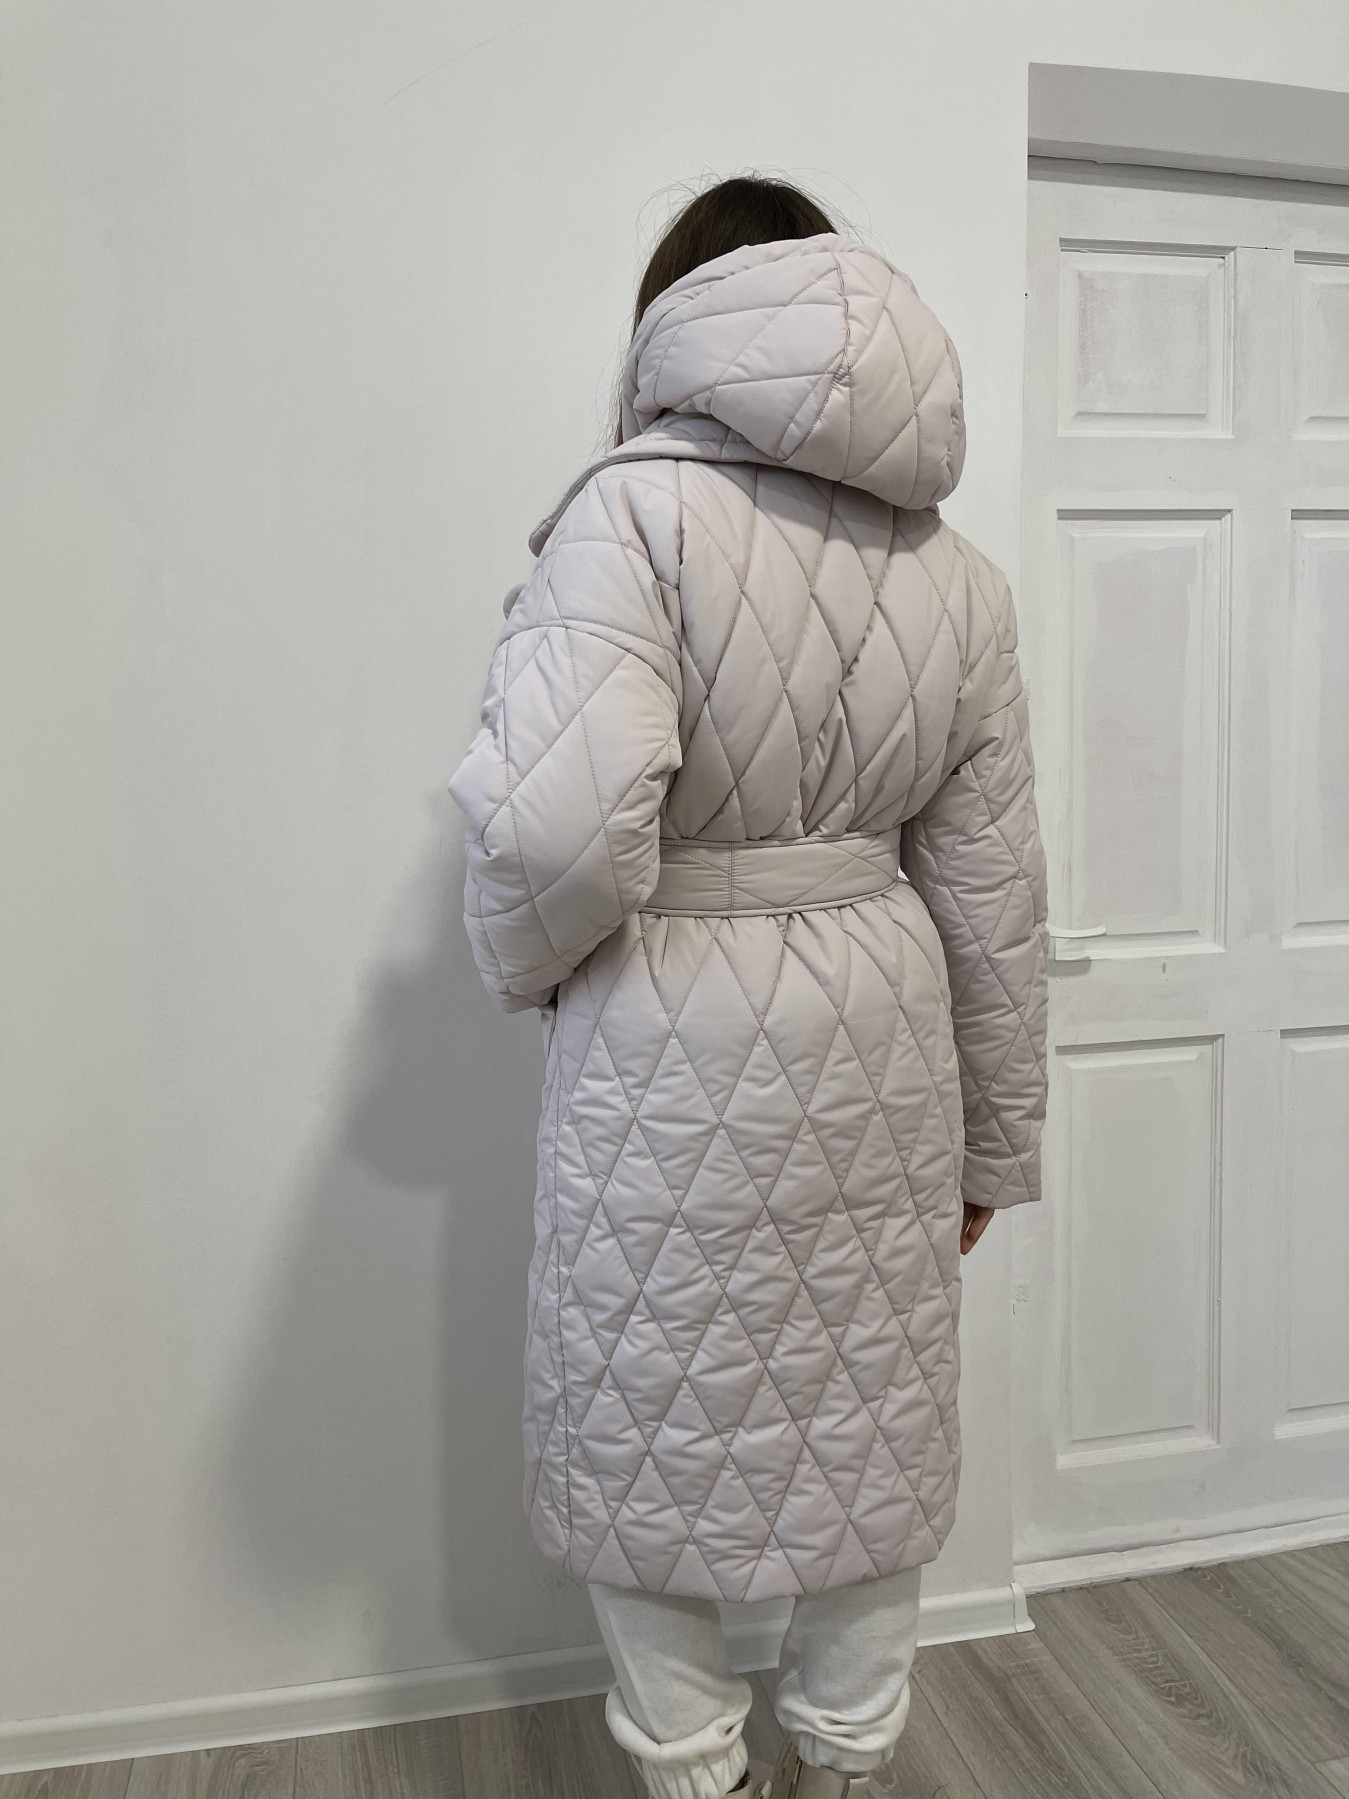 Хаски зимнее стеганое пальто 12045 АРТ. 48929 Цвет: Бежевый 970 - фото 6, интернет магазин tm-modus.ru